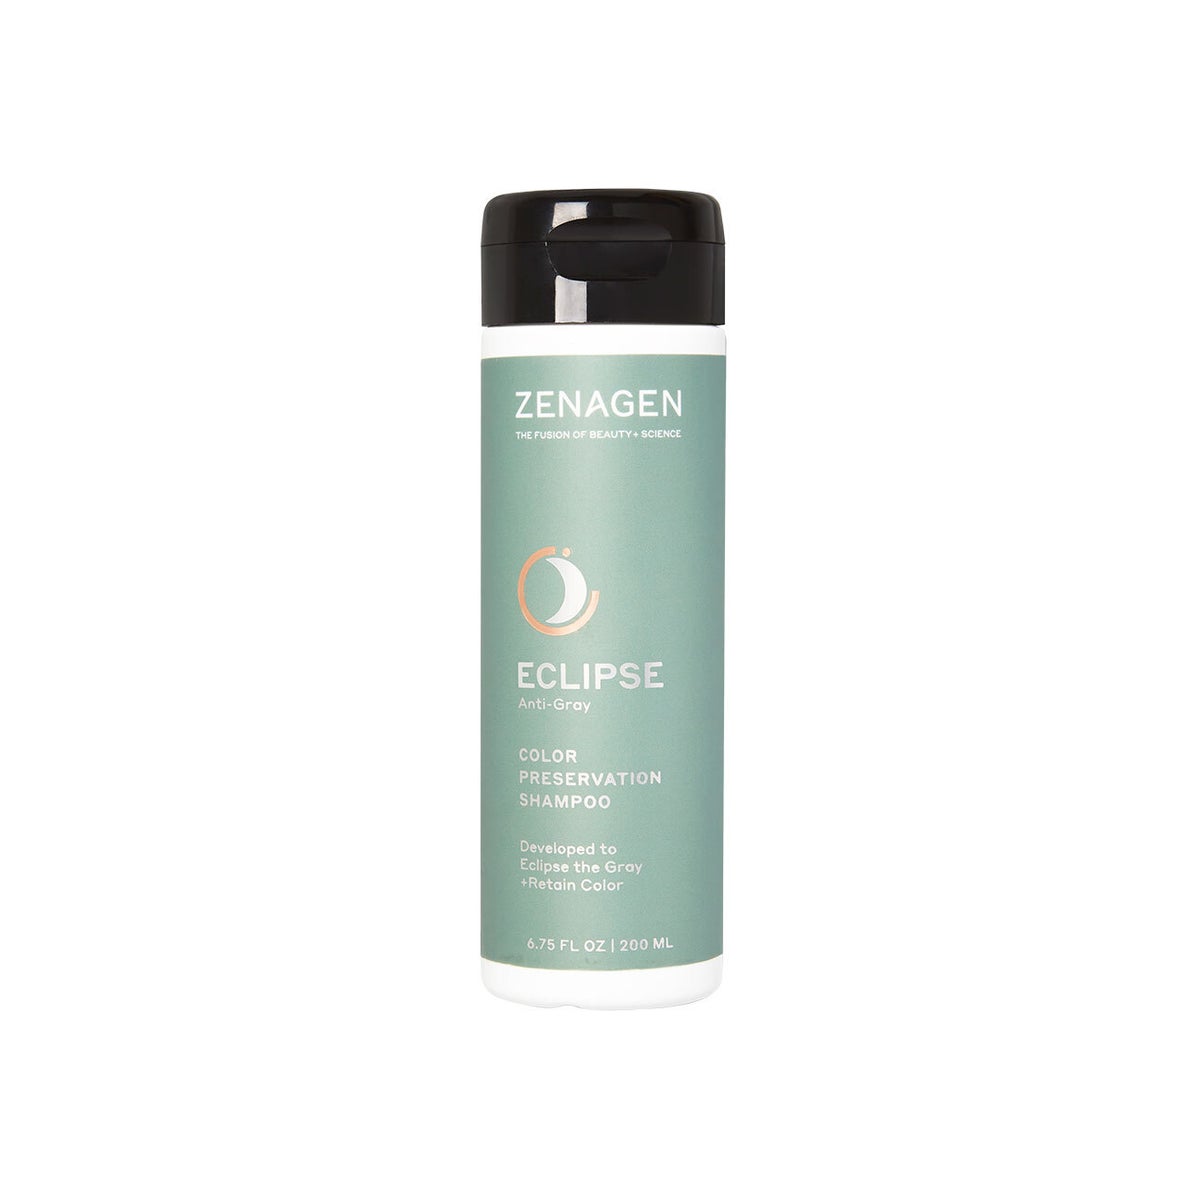 ZENAGEN Eclipse Anti-Gray Color Preserving Shampoo 6.75oz / 200ml